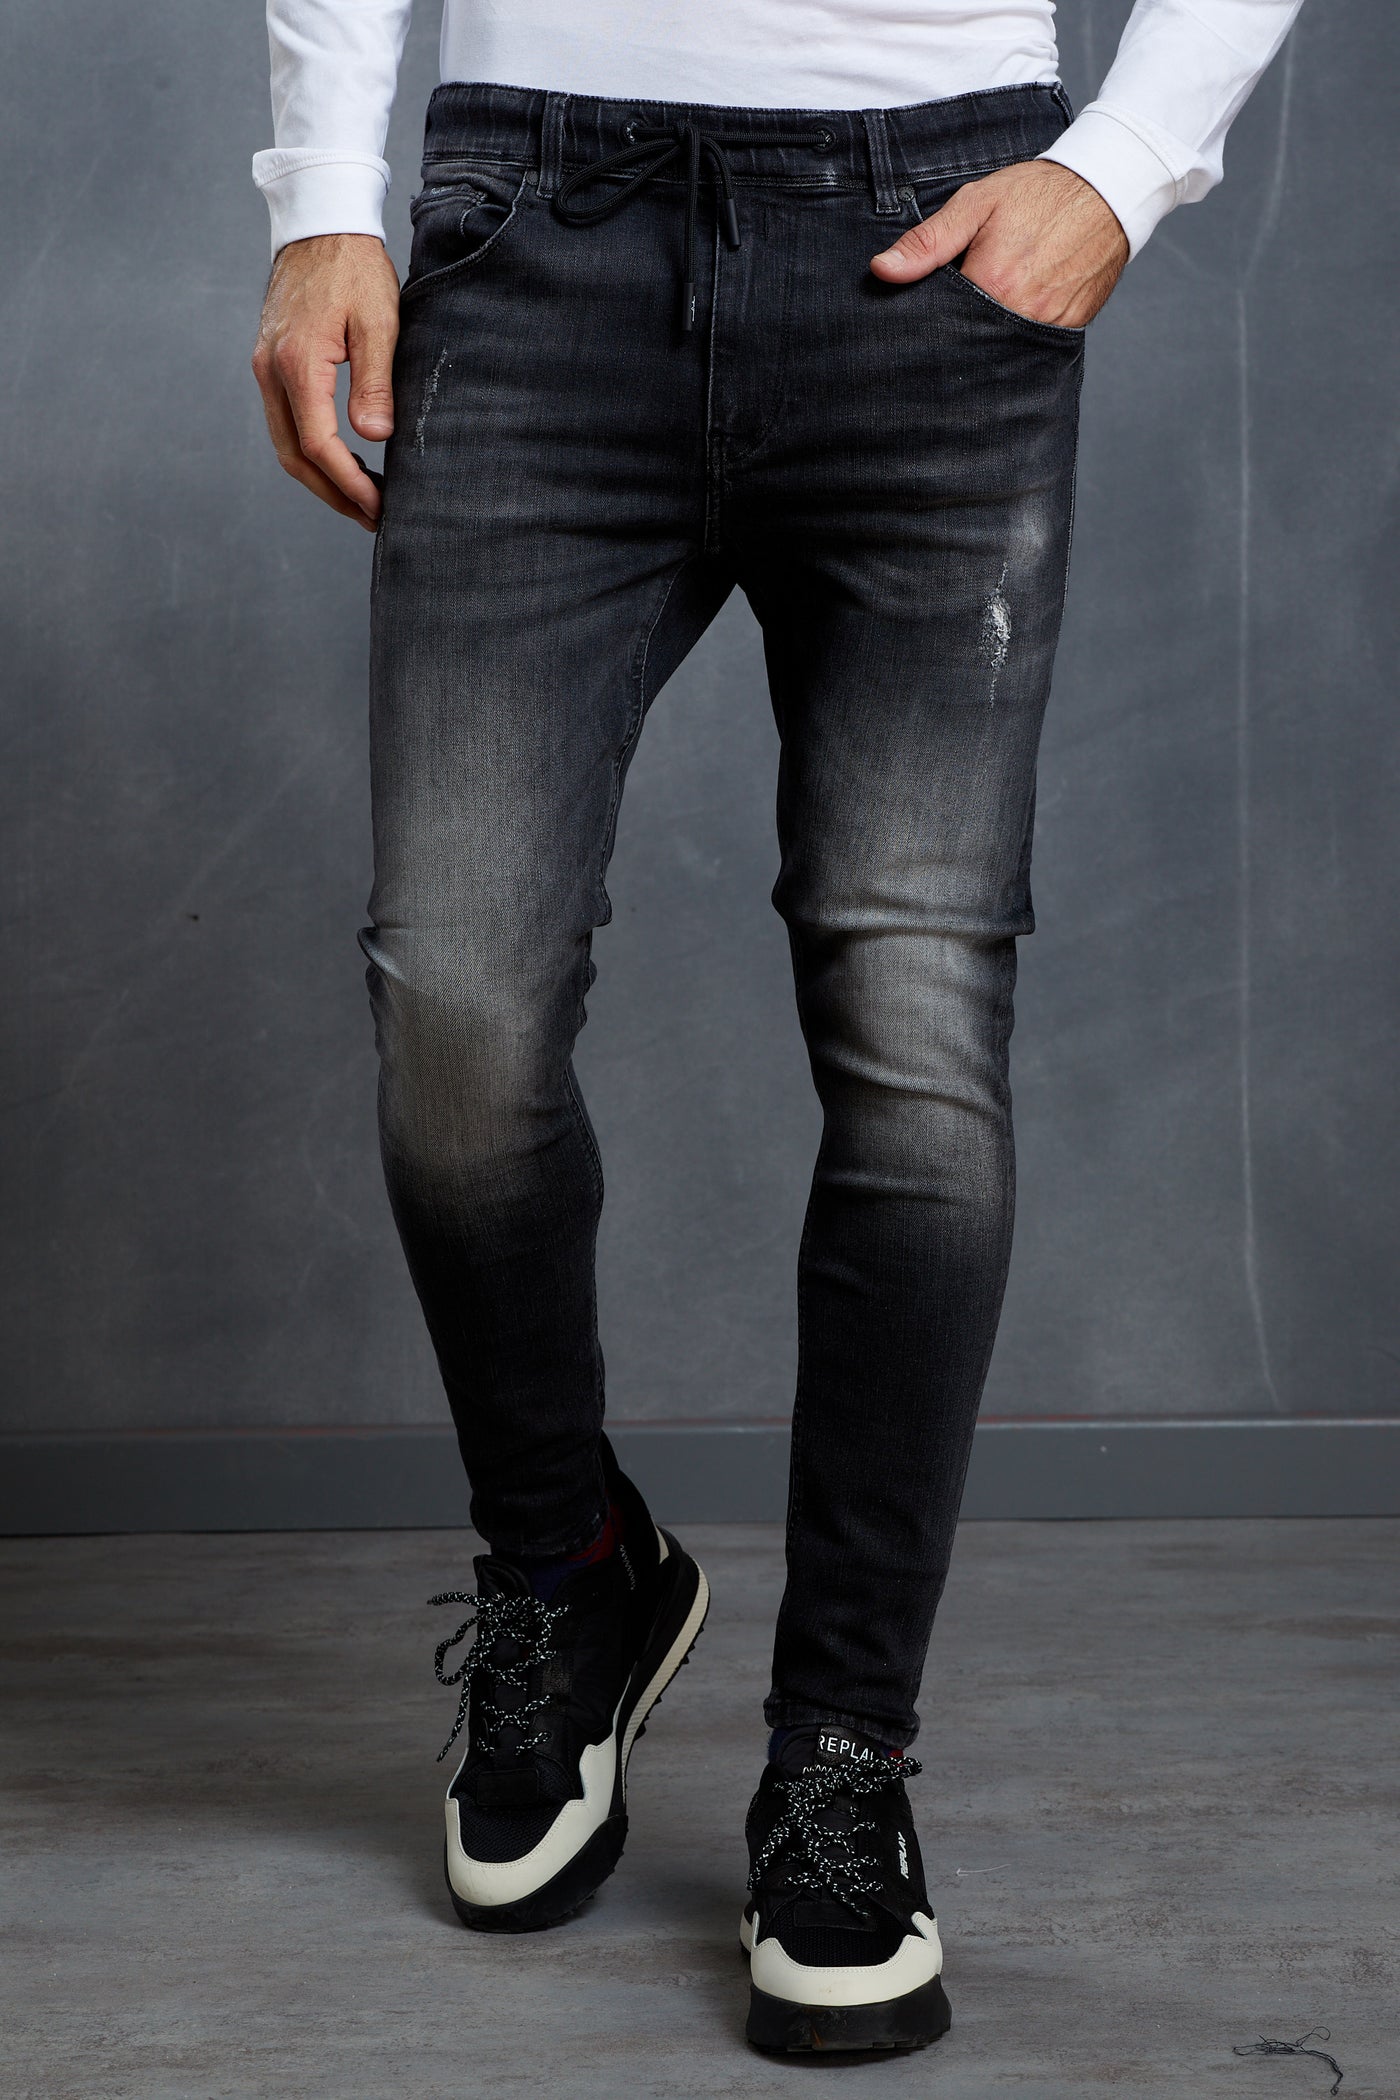 מכנס ג'ינס רגולר בצבע שחור